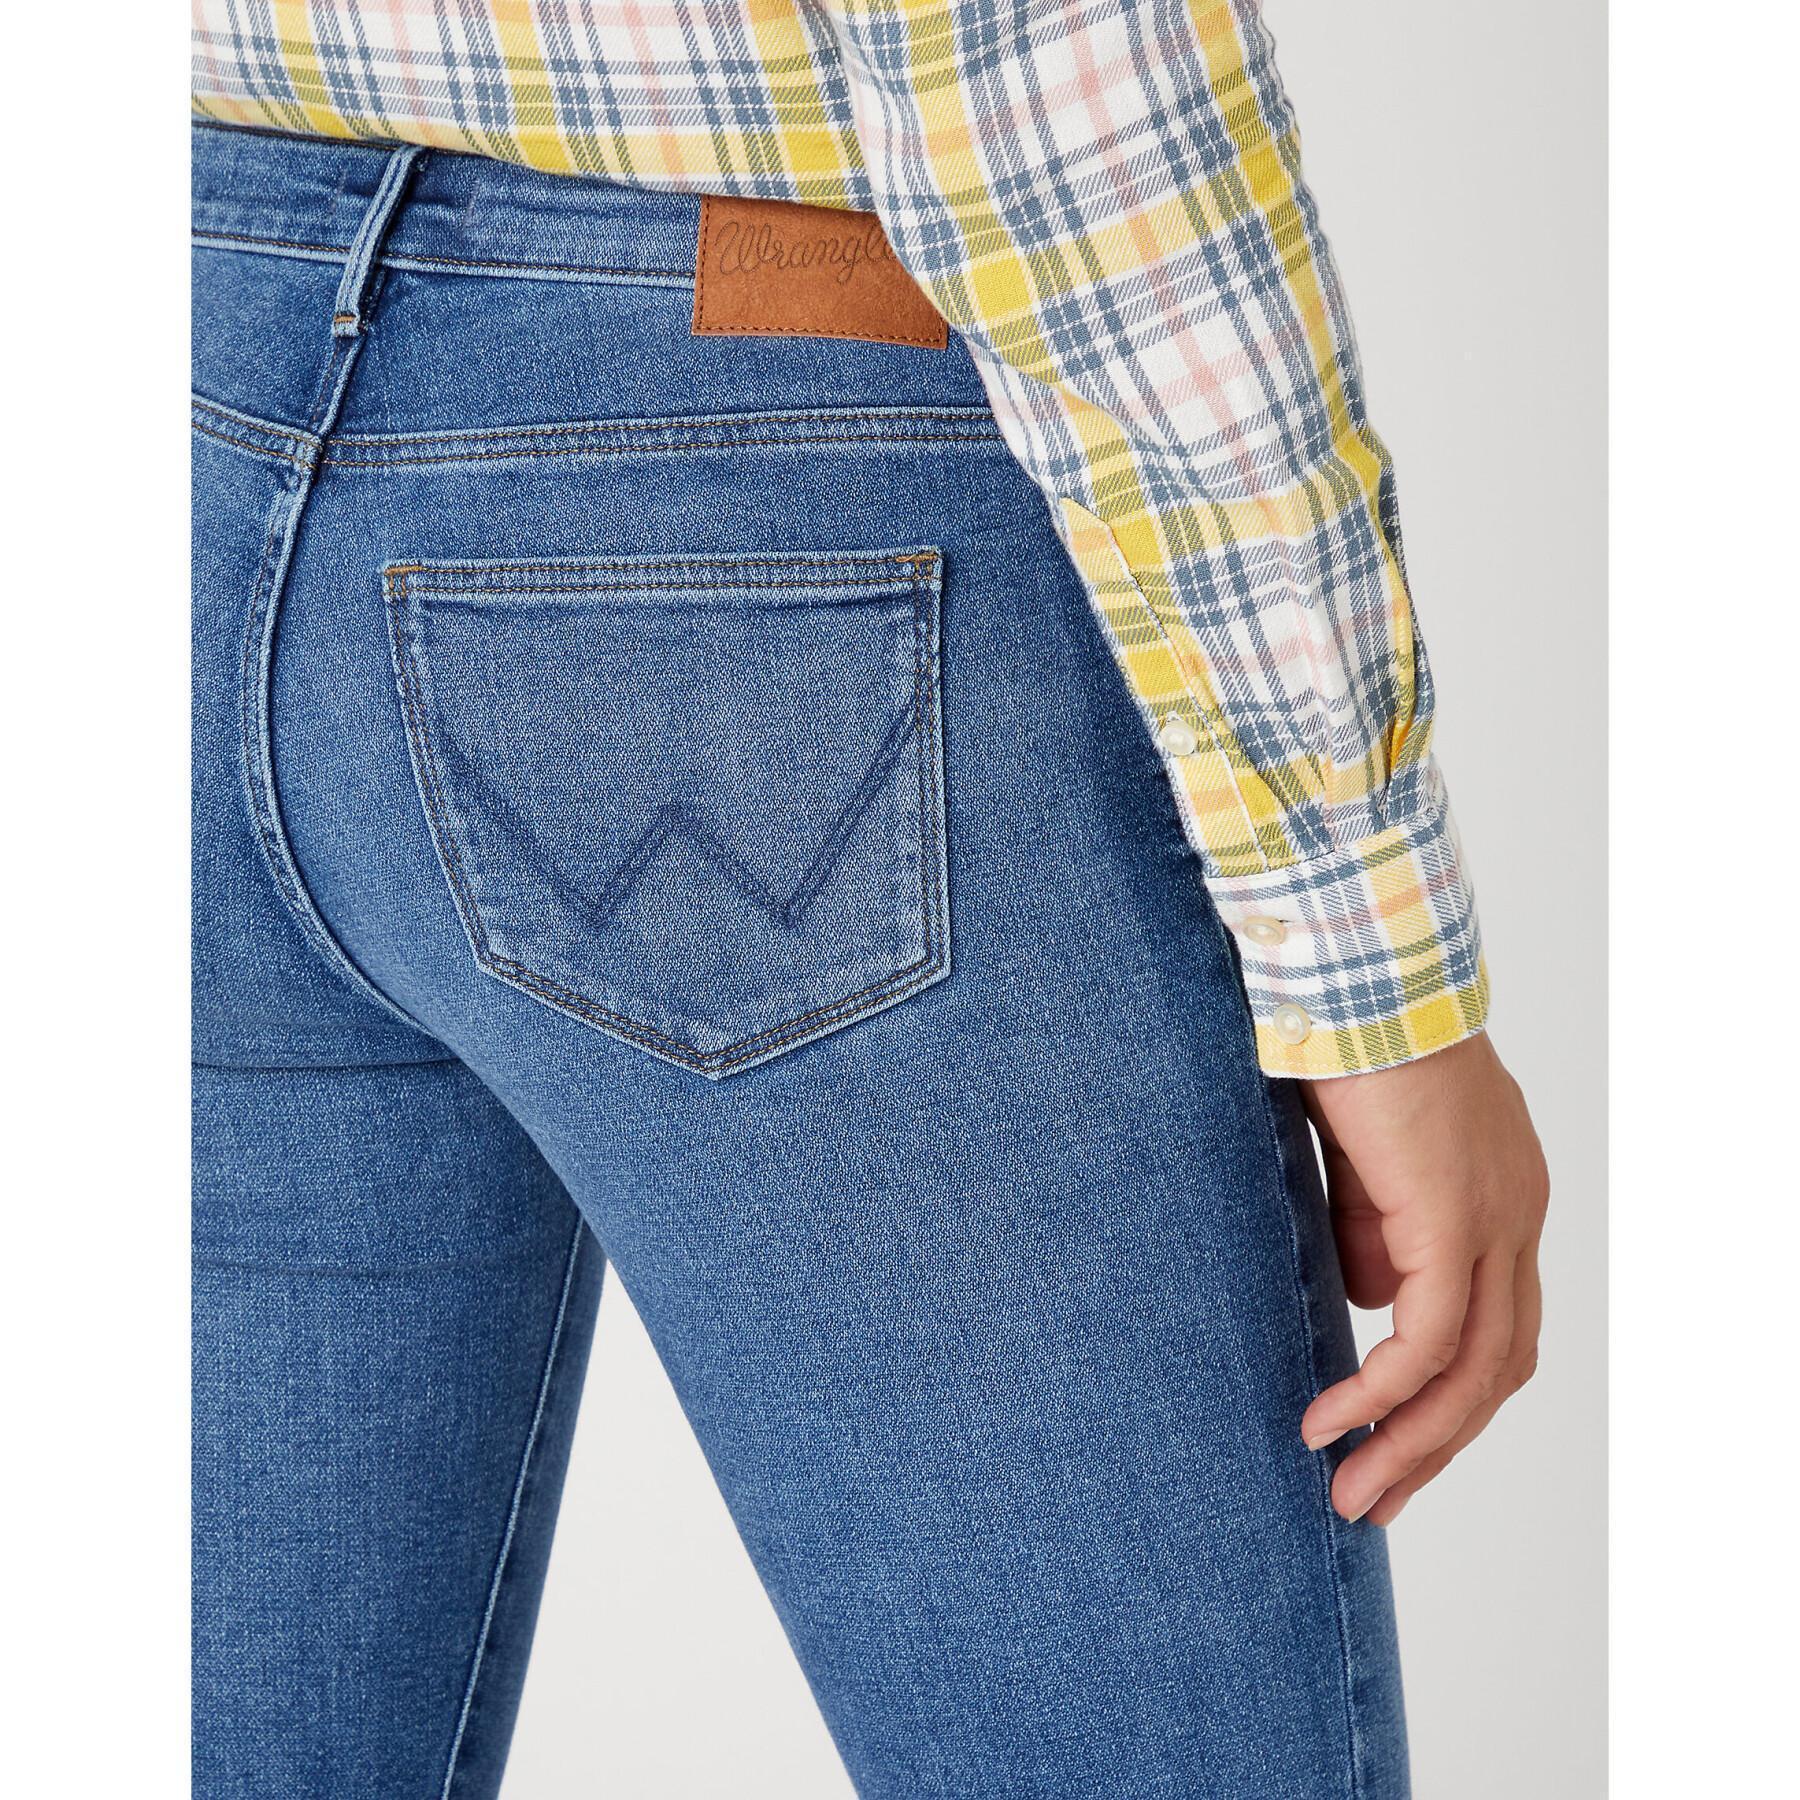 Jeans skinny femme Wrangler